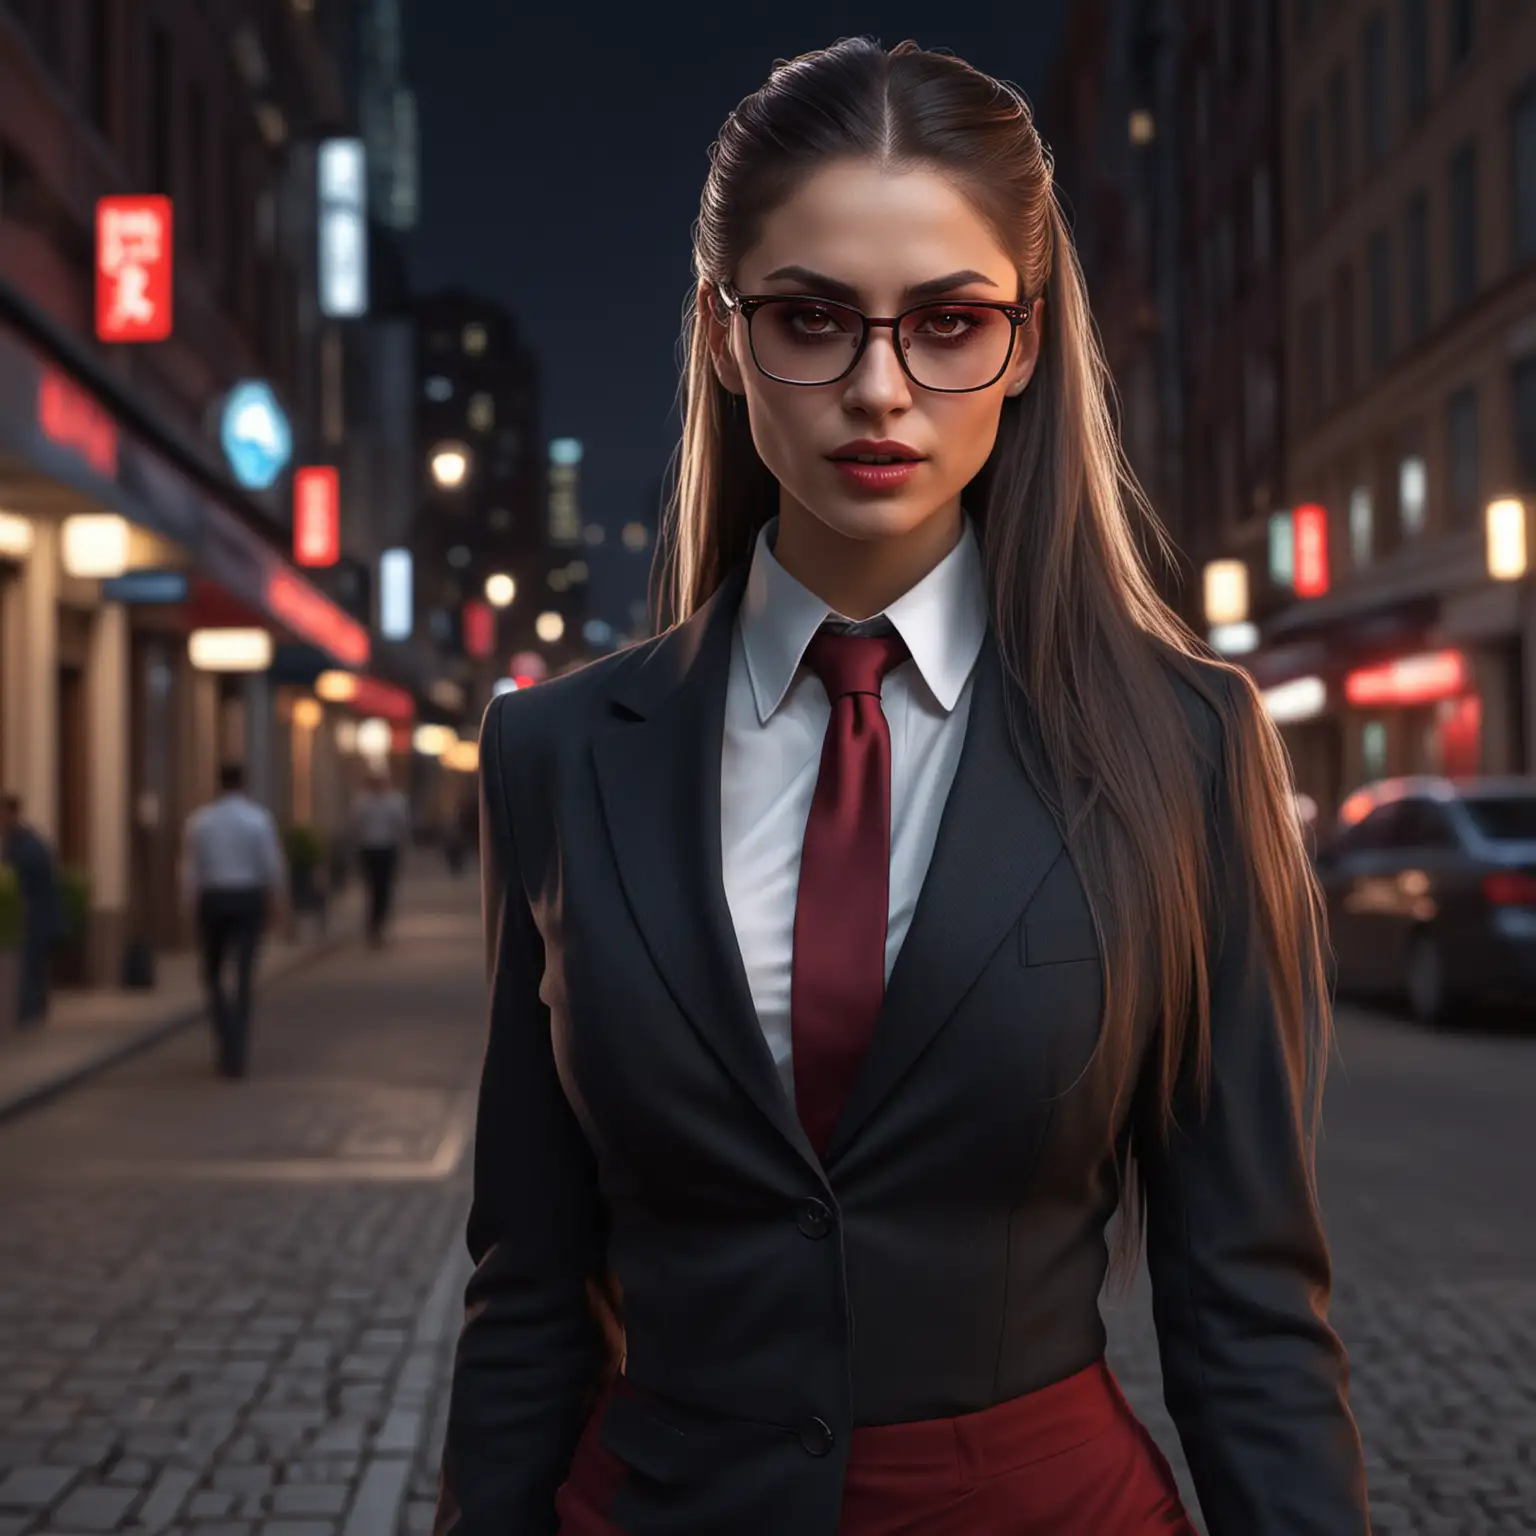 Urban Professional Vampire Female Malkavian in Business Attire